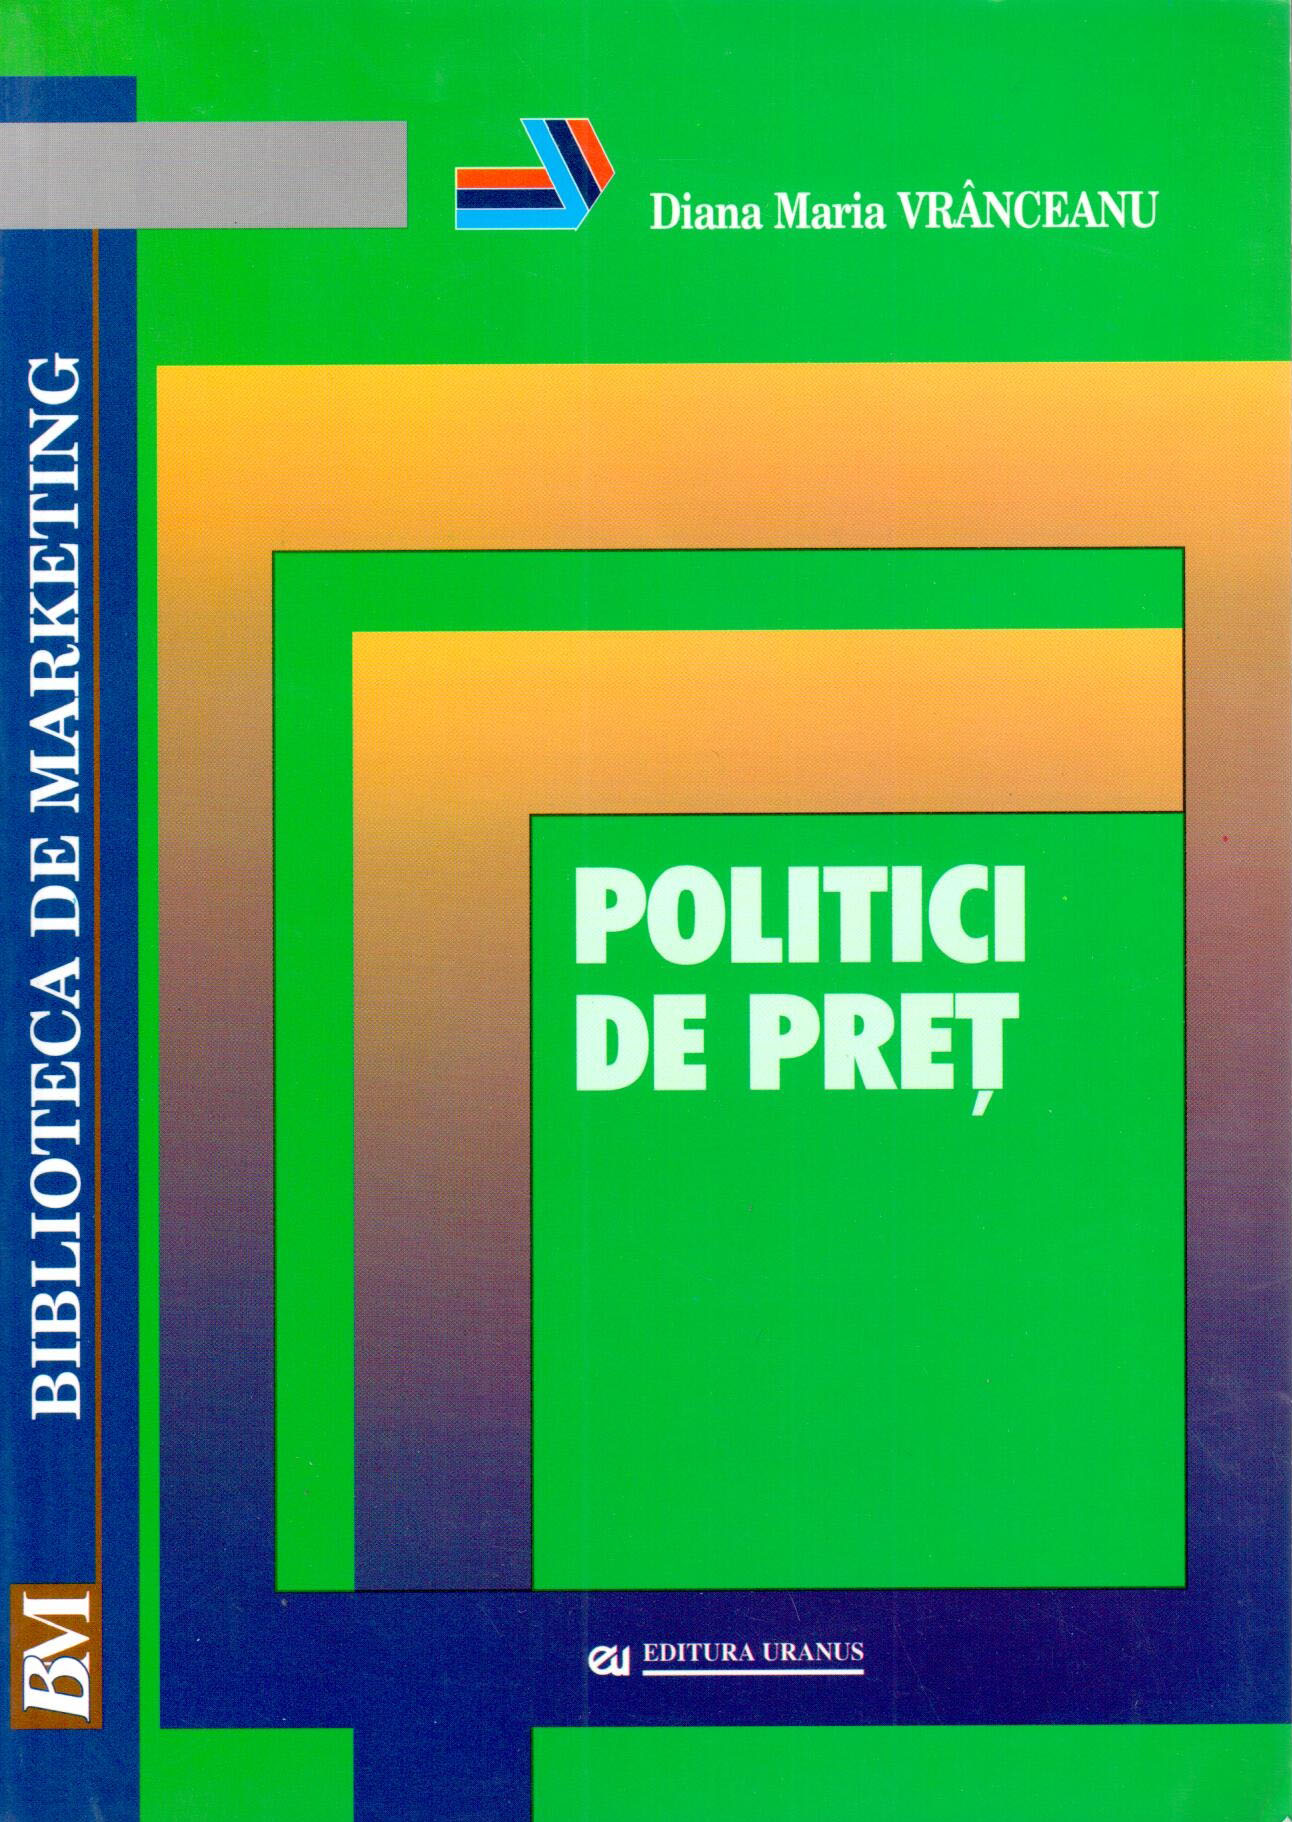 PDF Politici de pret | Diana Maria Vranceanu carturesti.ro Business si economie